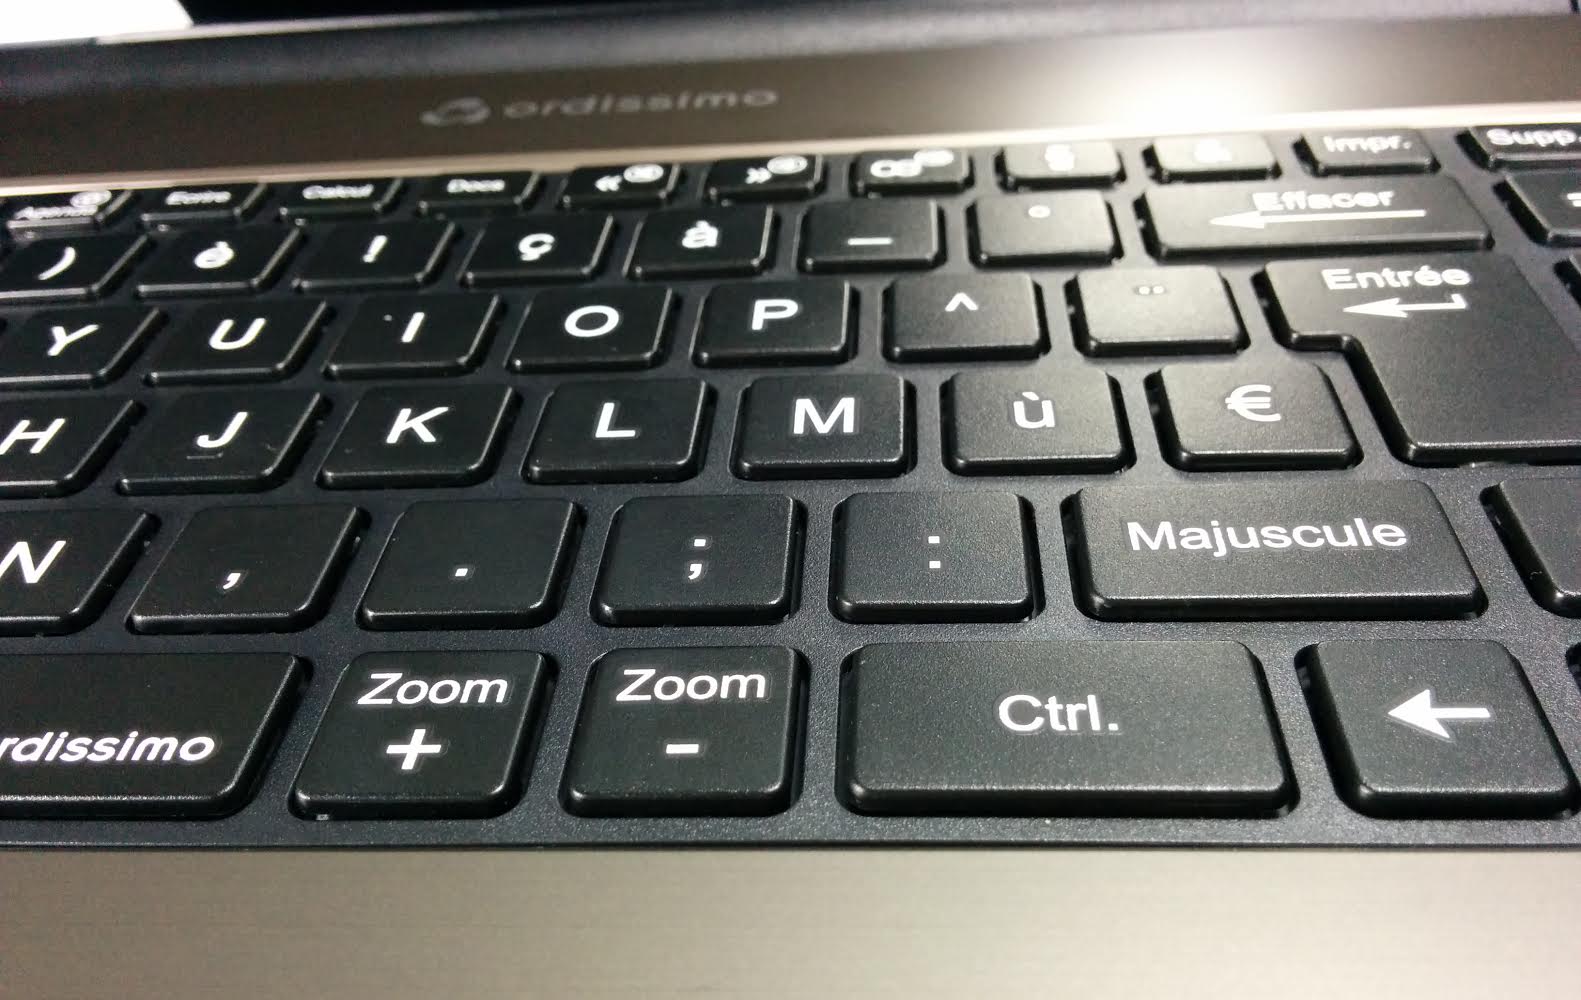 Ordissimo portable 15 pouces tactile vue clavier